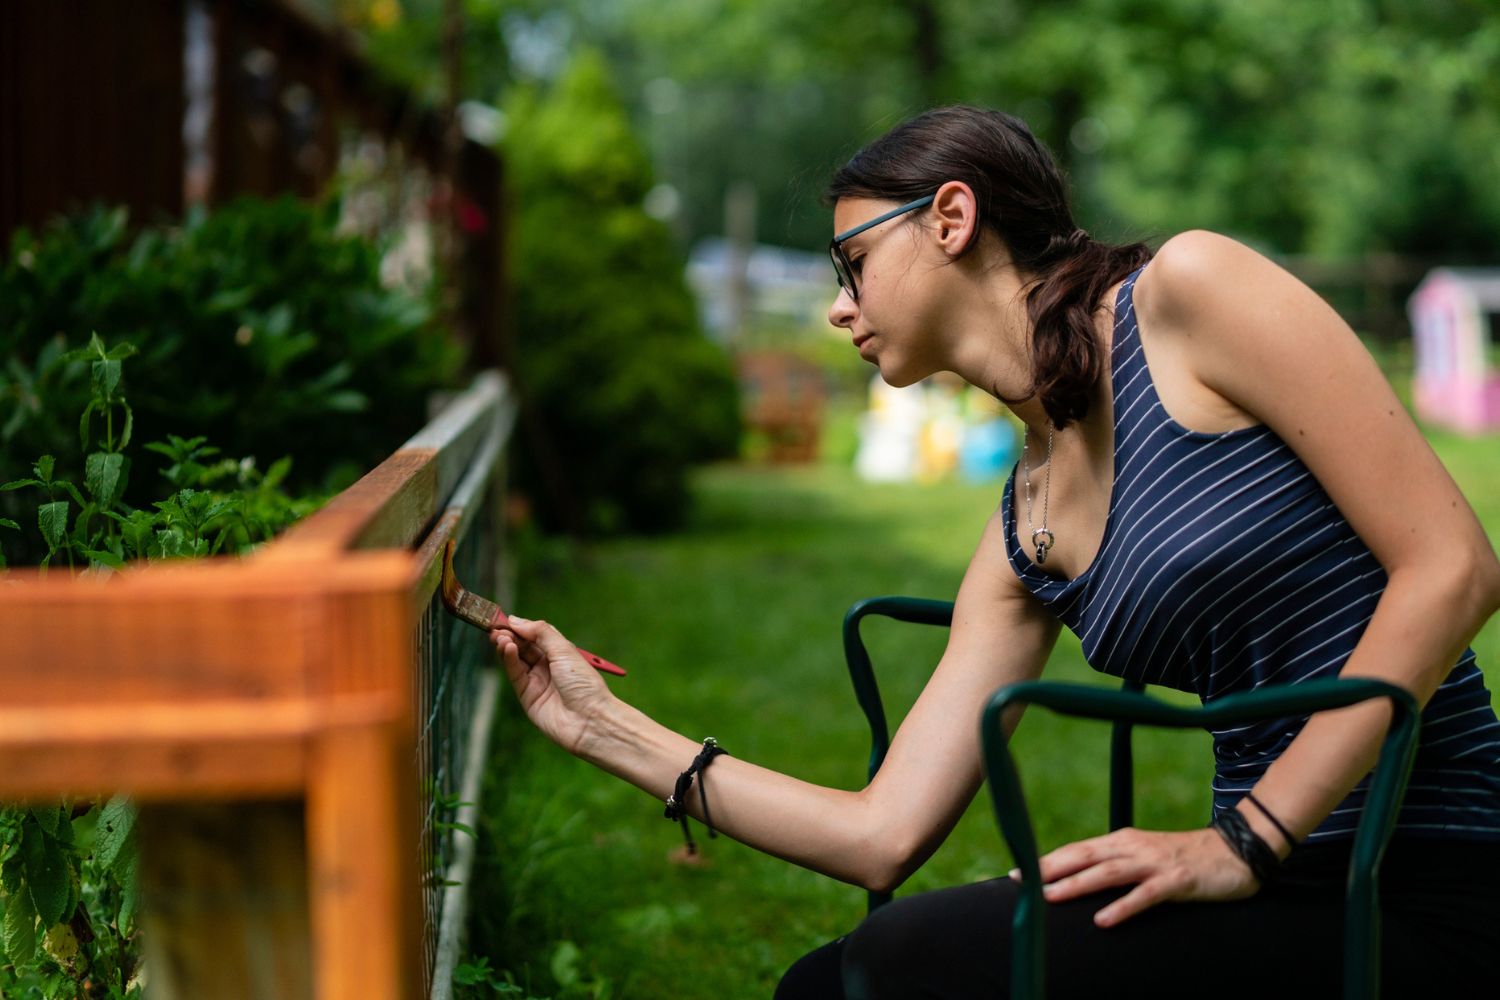 A woman paints a fence. 